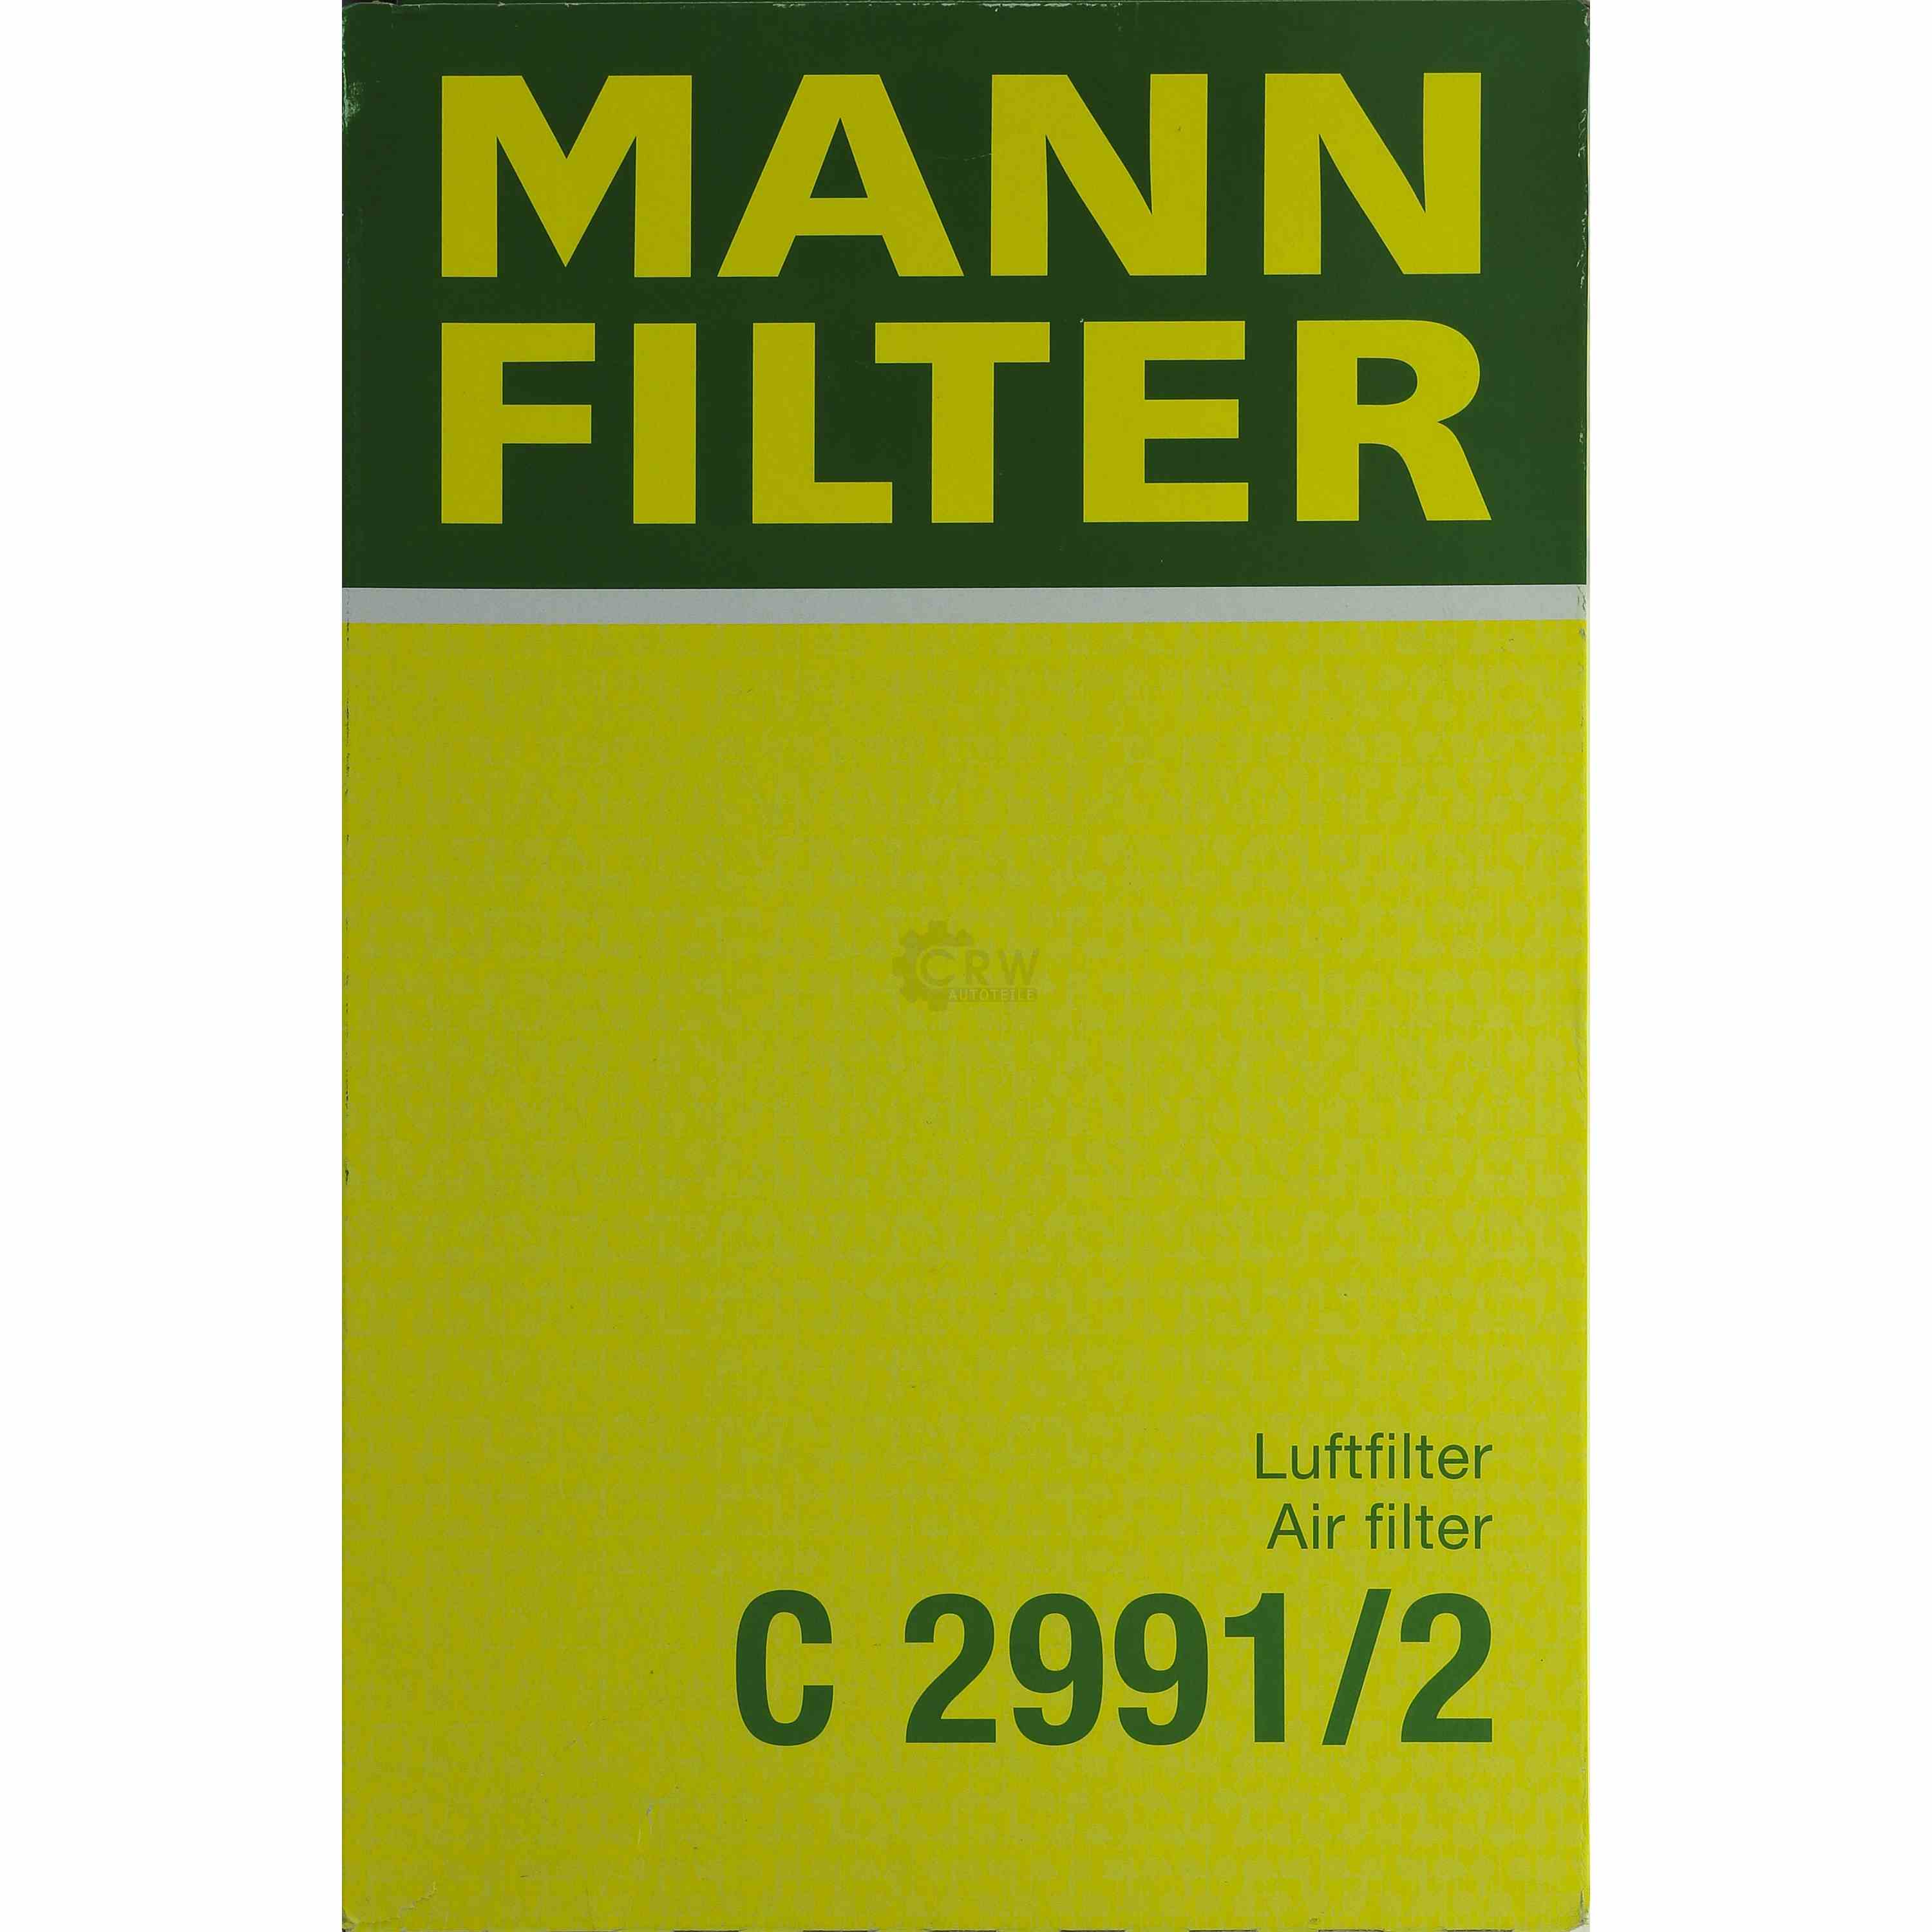 MANN-FILTER Luftfilter für Opel Calibra A 85_ 2.0i Vectra 86_ 87_ 1.8i Cat 1.8